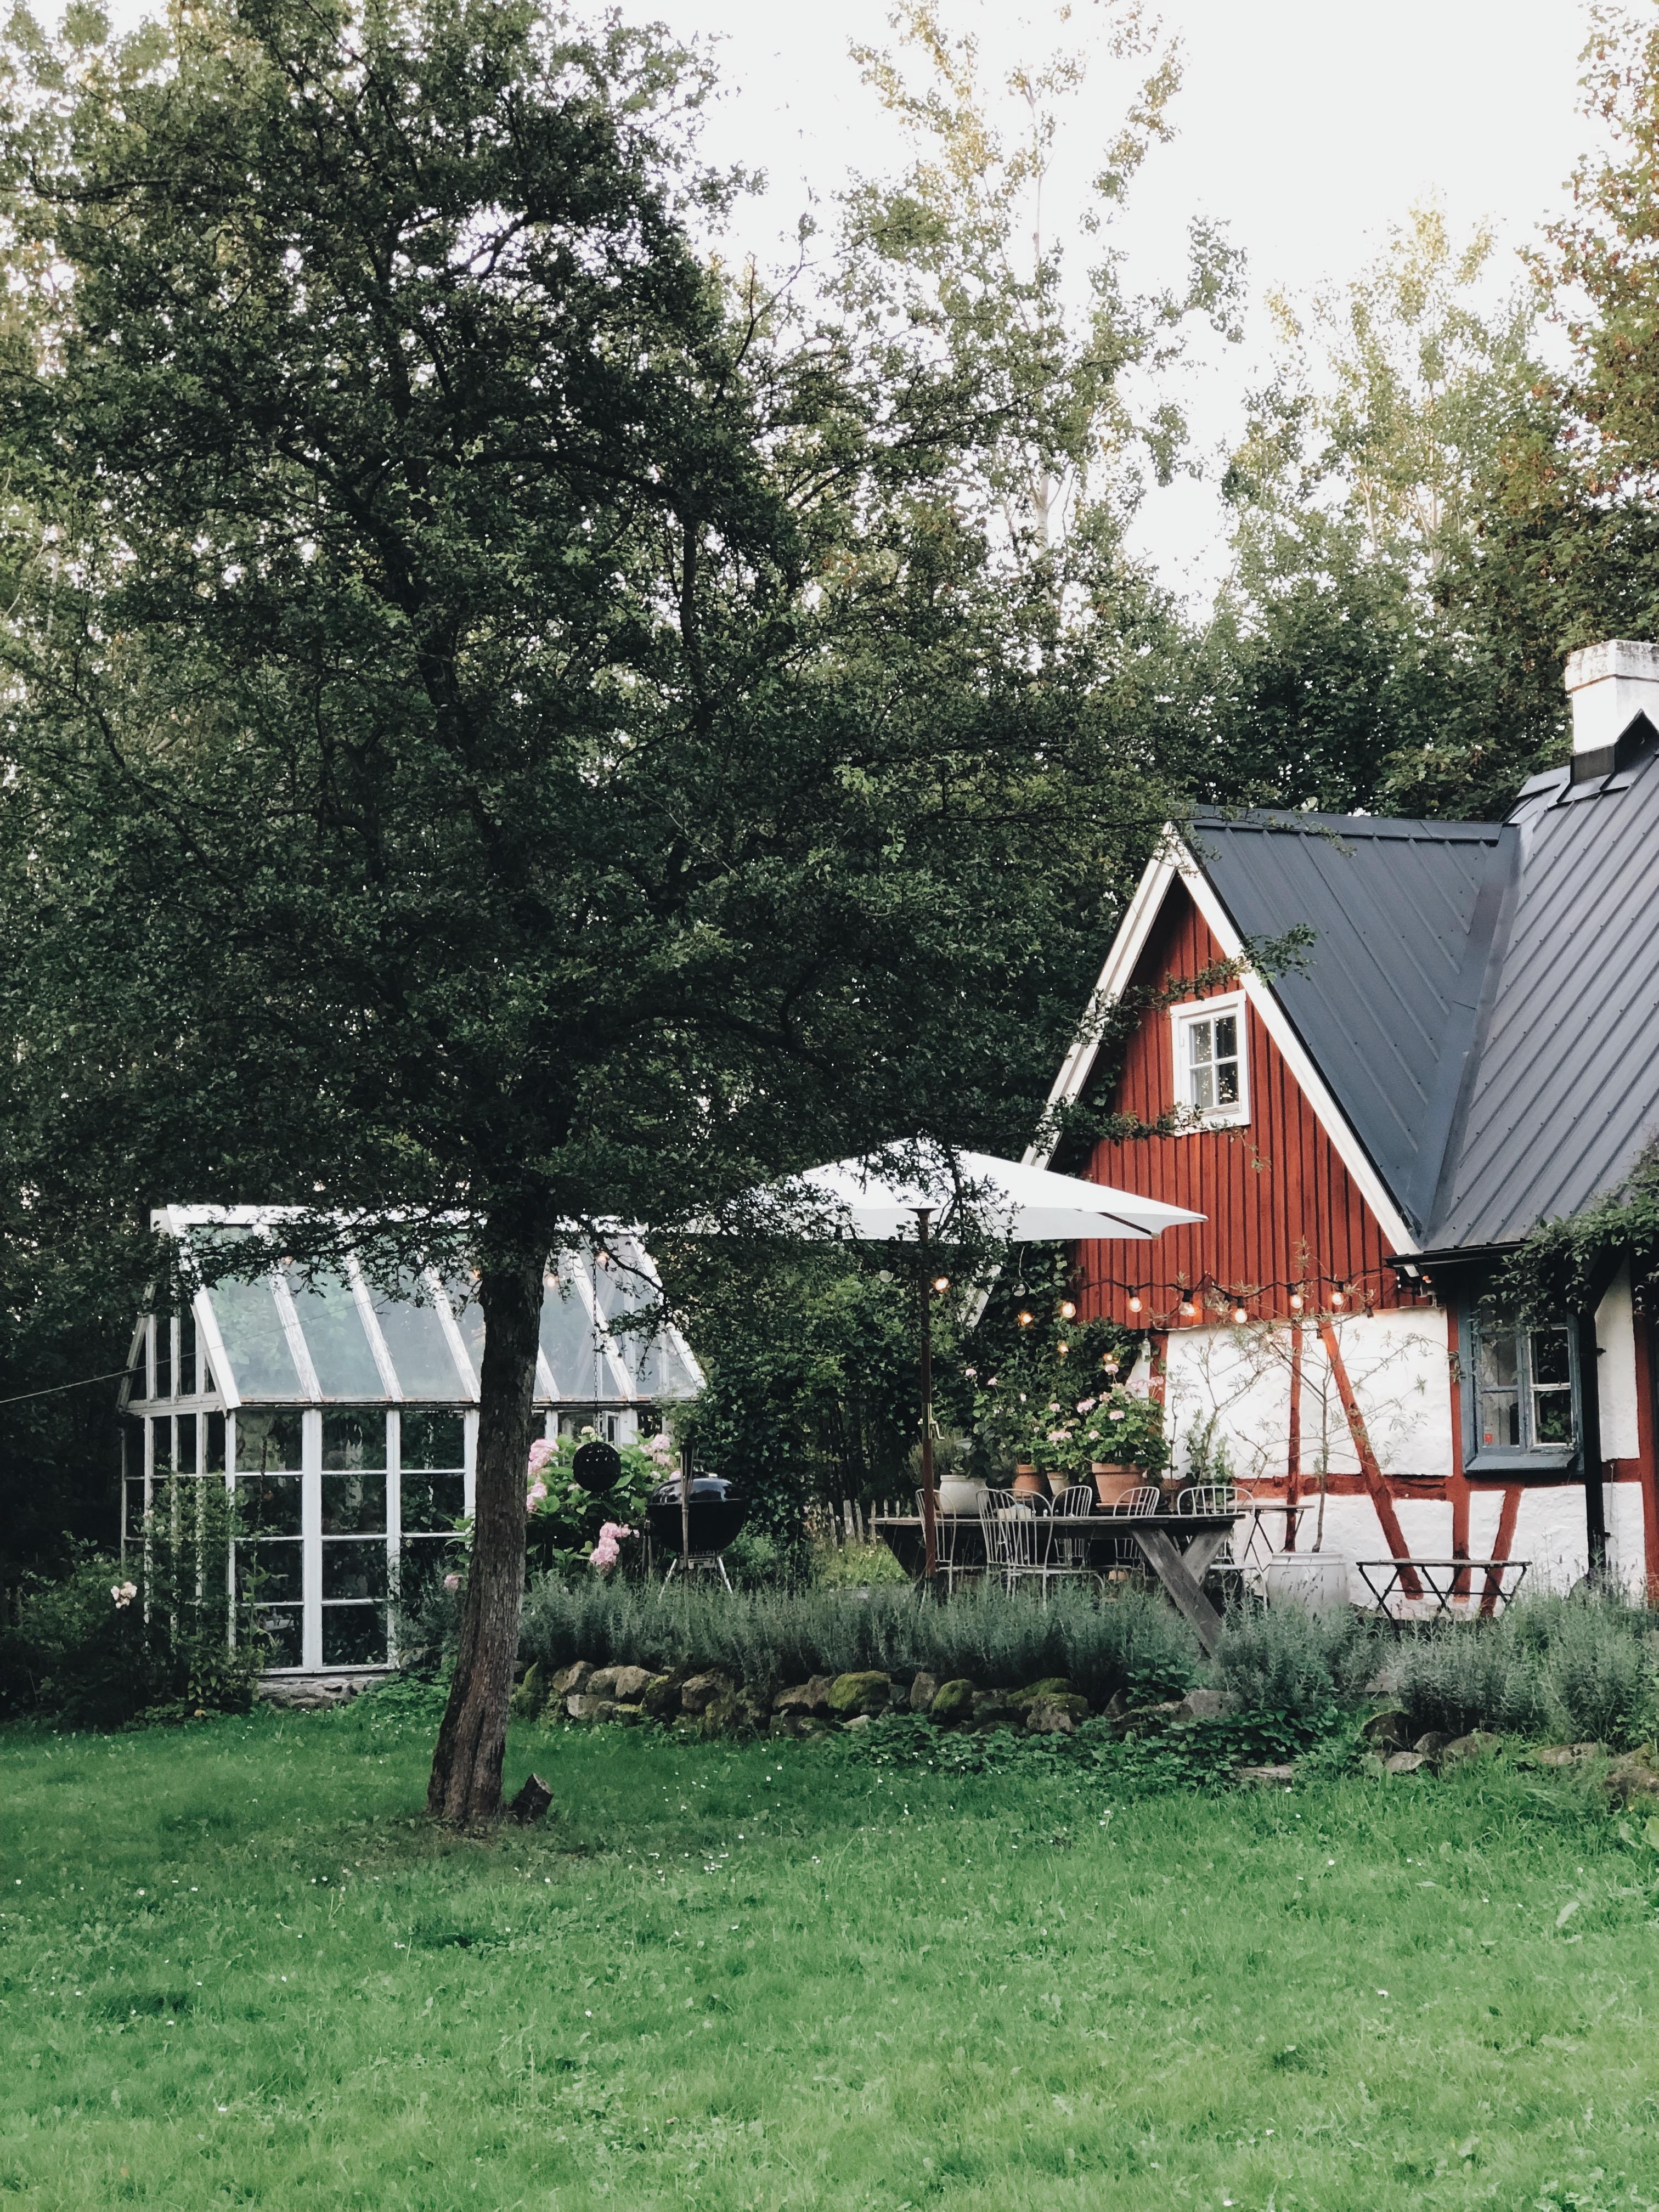 Unser Ferienhaus in Schweden 🇸🇪 #ferienhaus #hygge #skane #sommer #urlaub #schwedenhaus